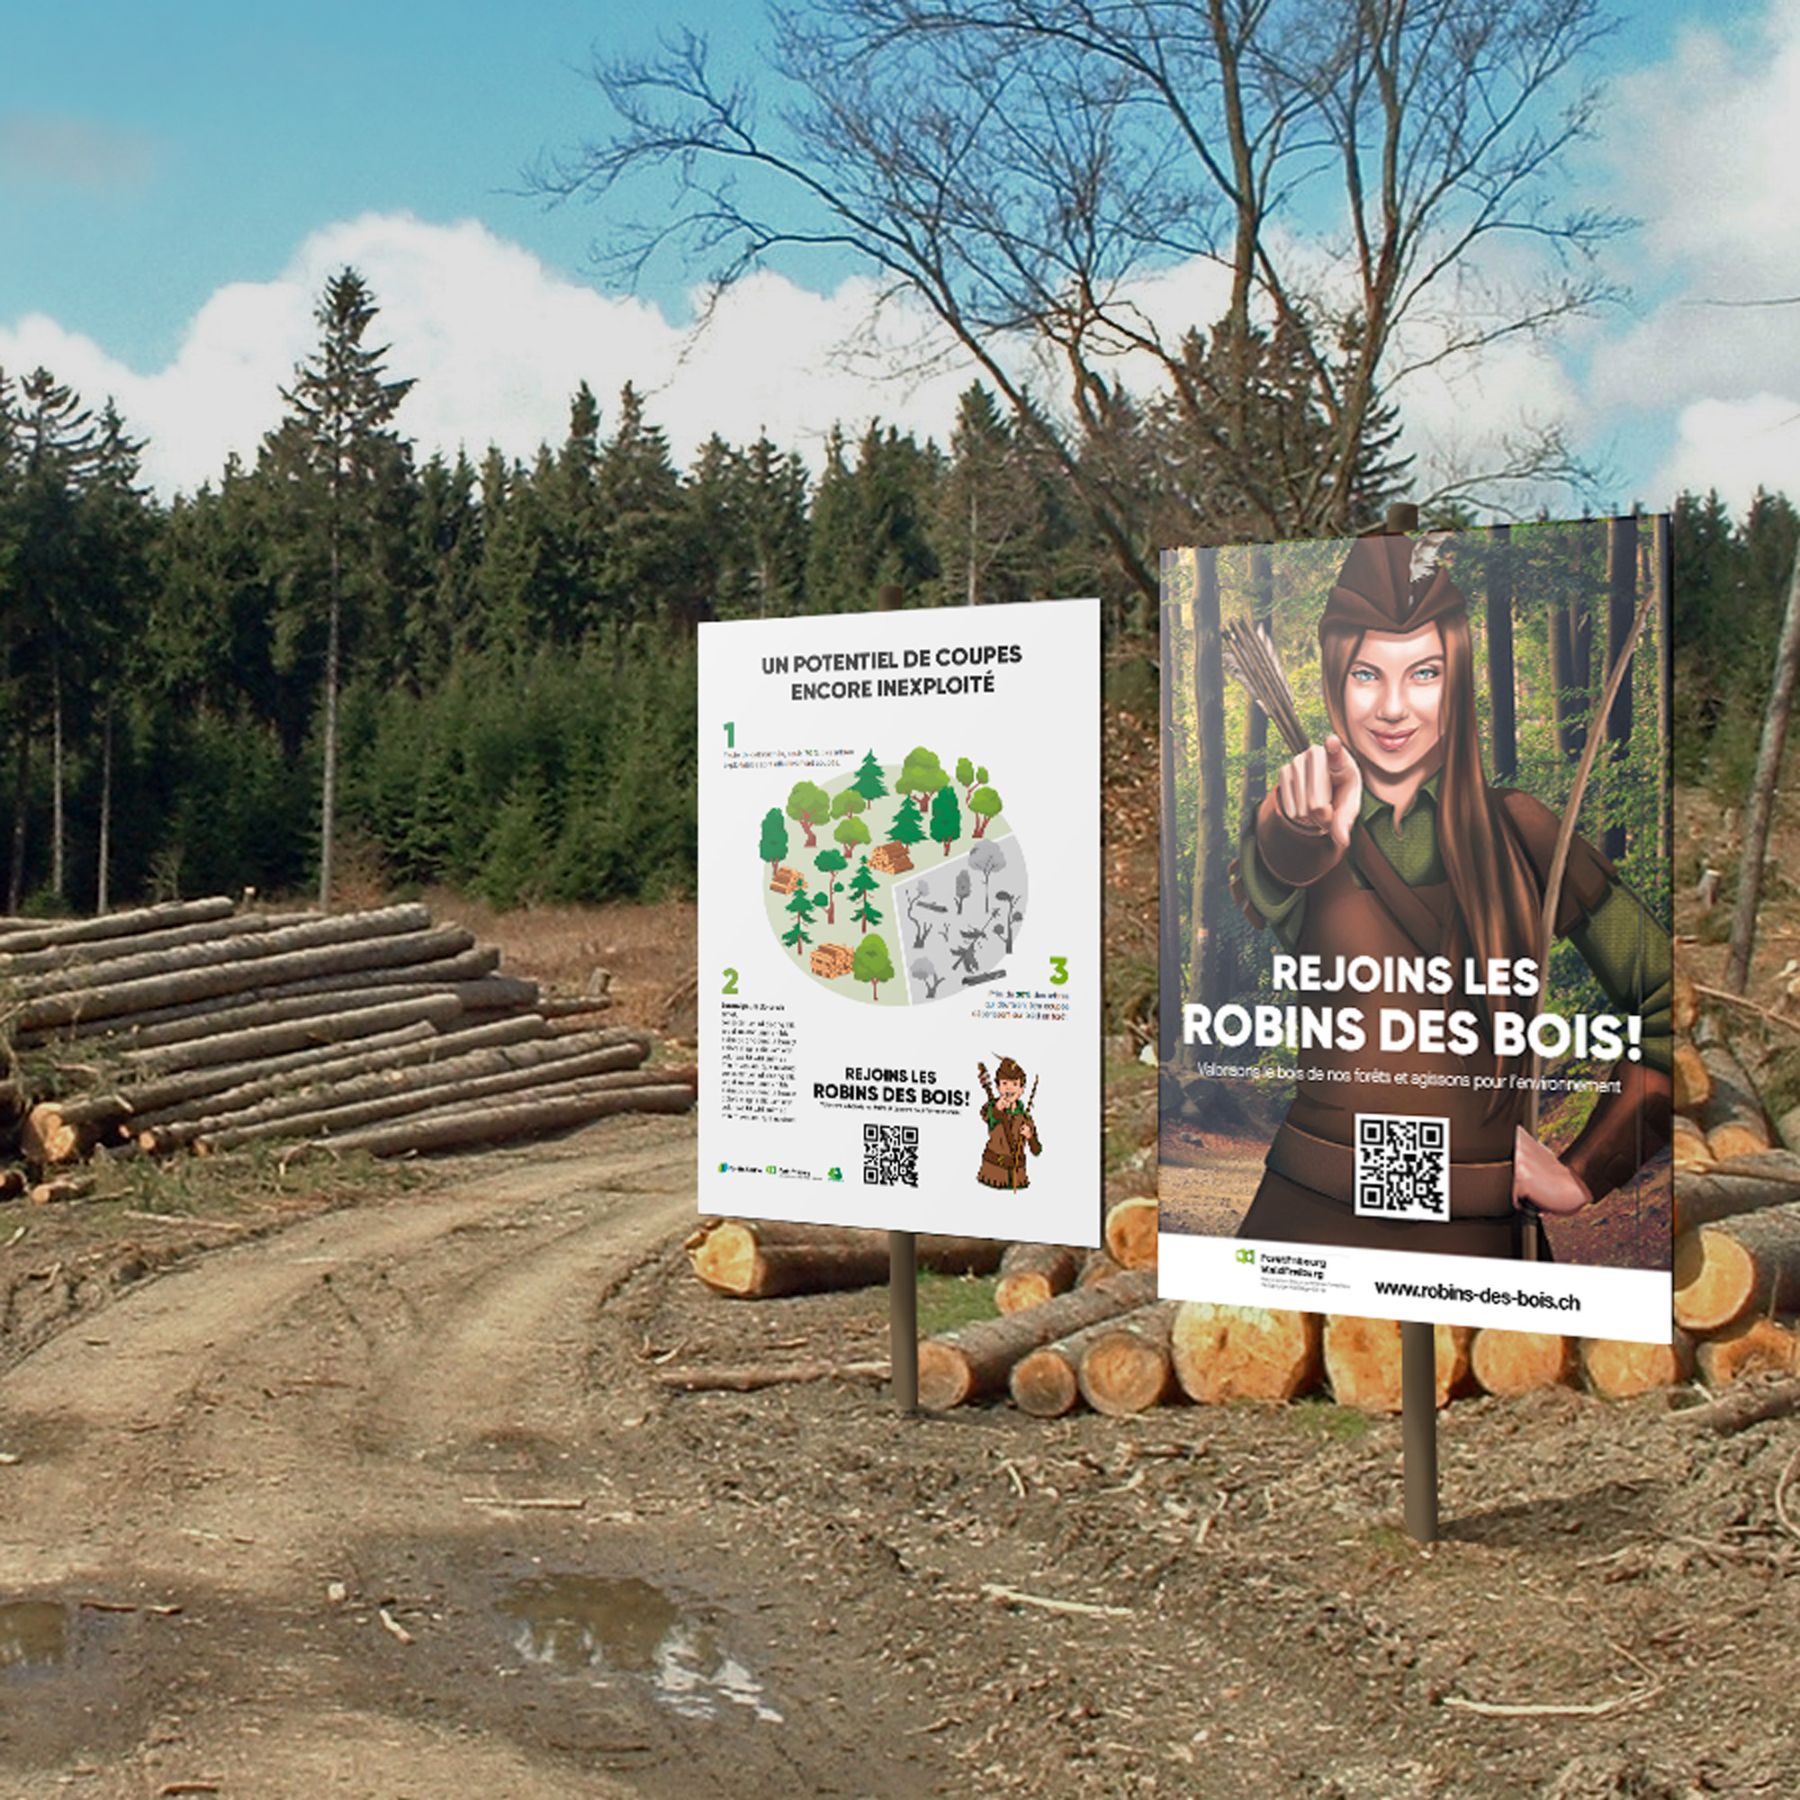 Mockup de l'affiche des Robins des bois utilisés pour simuler le résultat au client